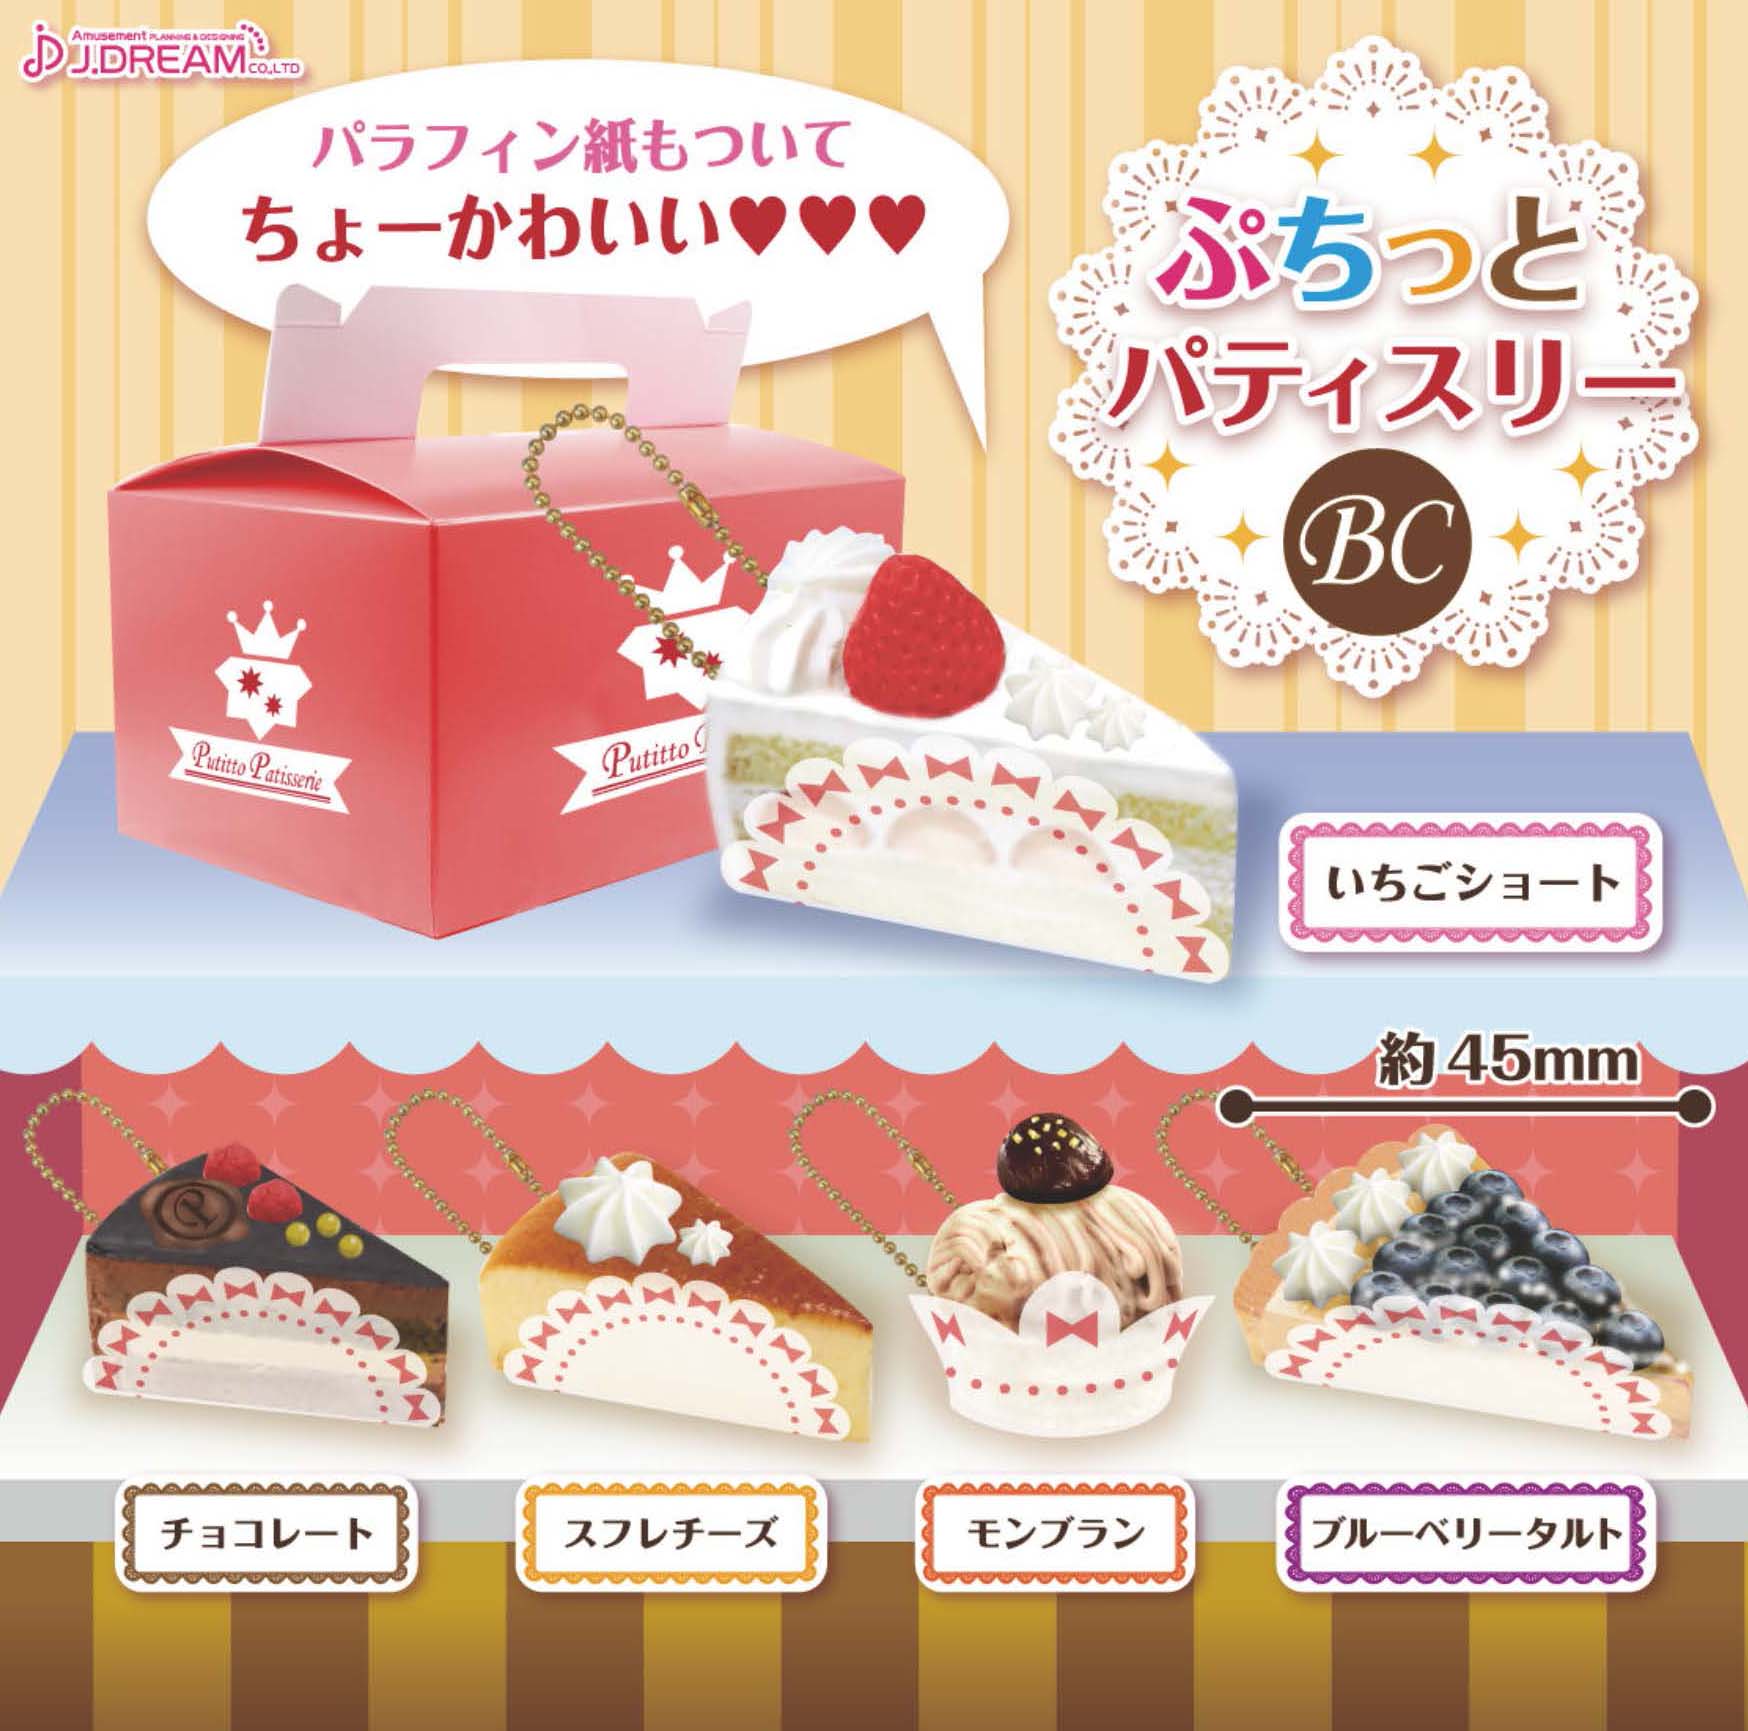 200日元扭蛋 可爱甜点模型 挂件 全5种  851137